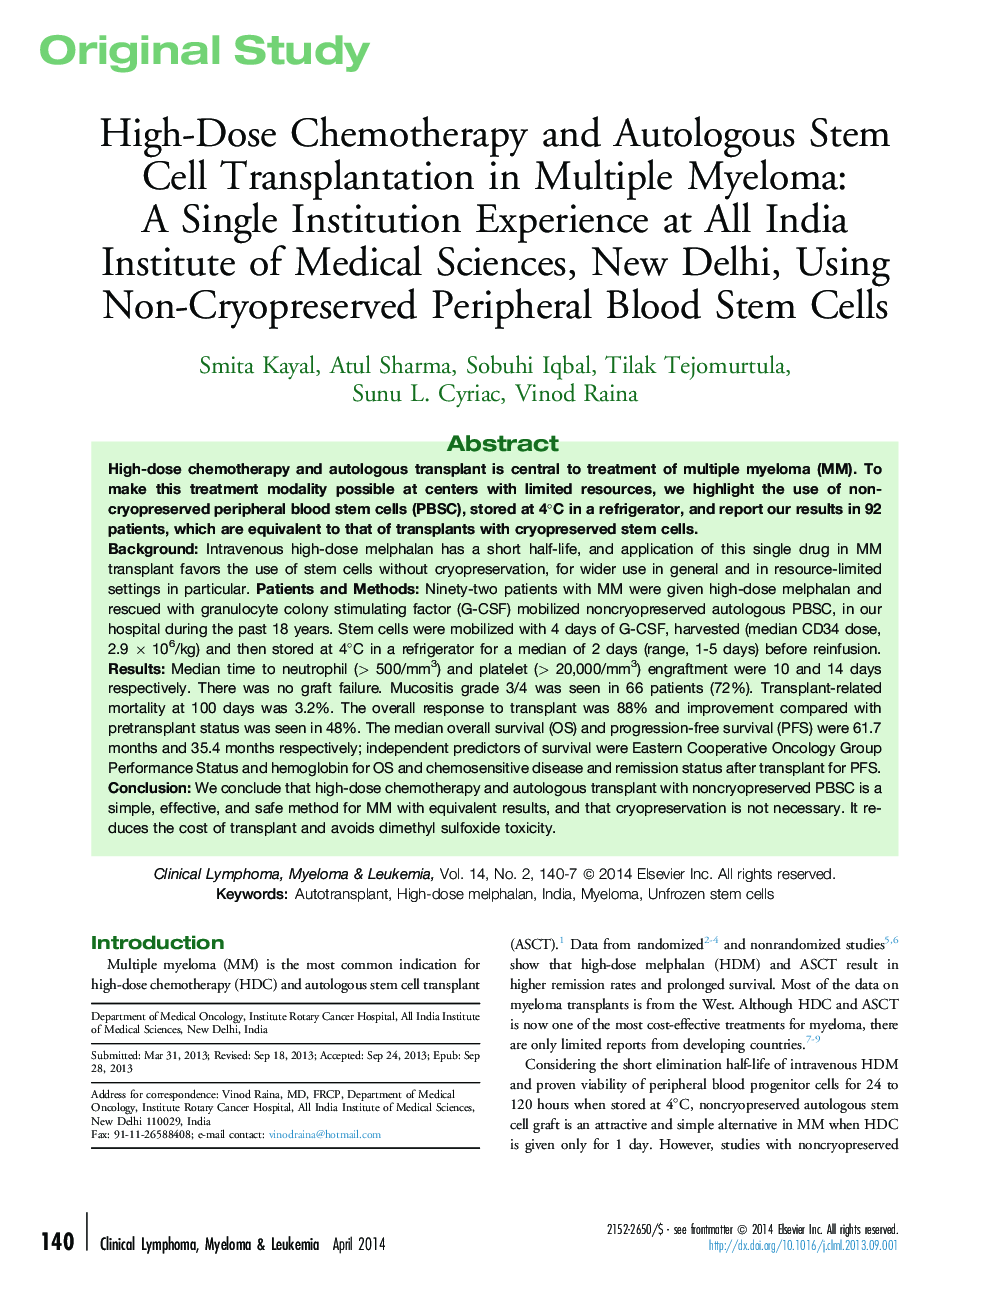 شیمیدرمانی با دوز بالا و پیوند سلول های بنیادی اتولوگ در مبتلایان به چندزبعی: یک تجربه واحد در موسسه علوم پزشکی هند، دهلی نو، با استفاده از سلول های بنیادی خون محیطی غیرقابل نگهداری 